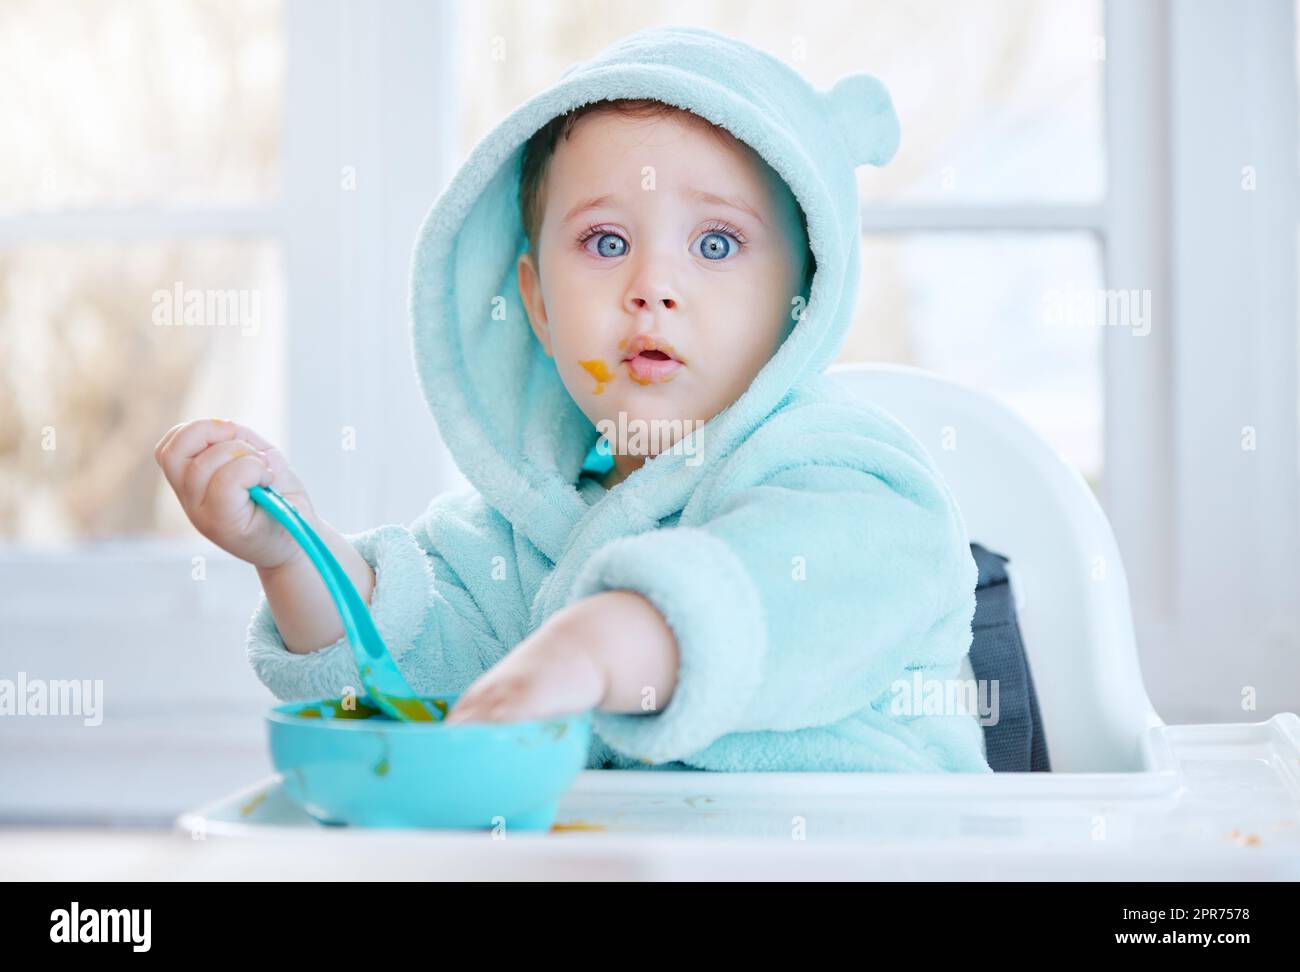 È così delizioso che voglio leccare il recipiente pulito. Shot di un bambino adorabile che mangia il suo cibo. Foto Stock